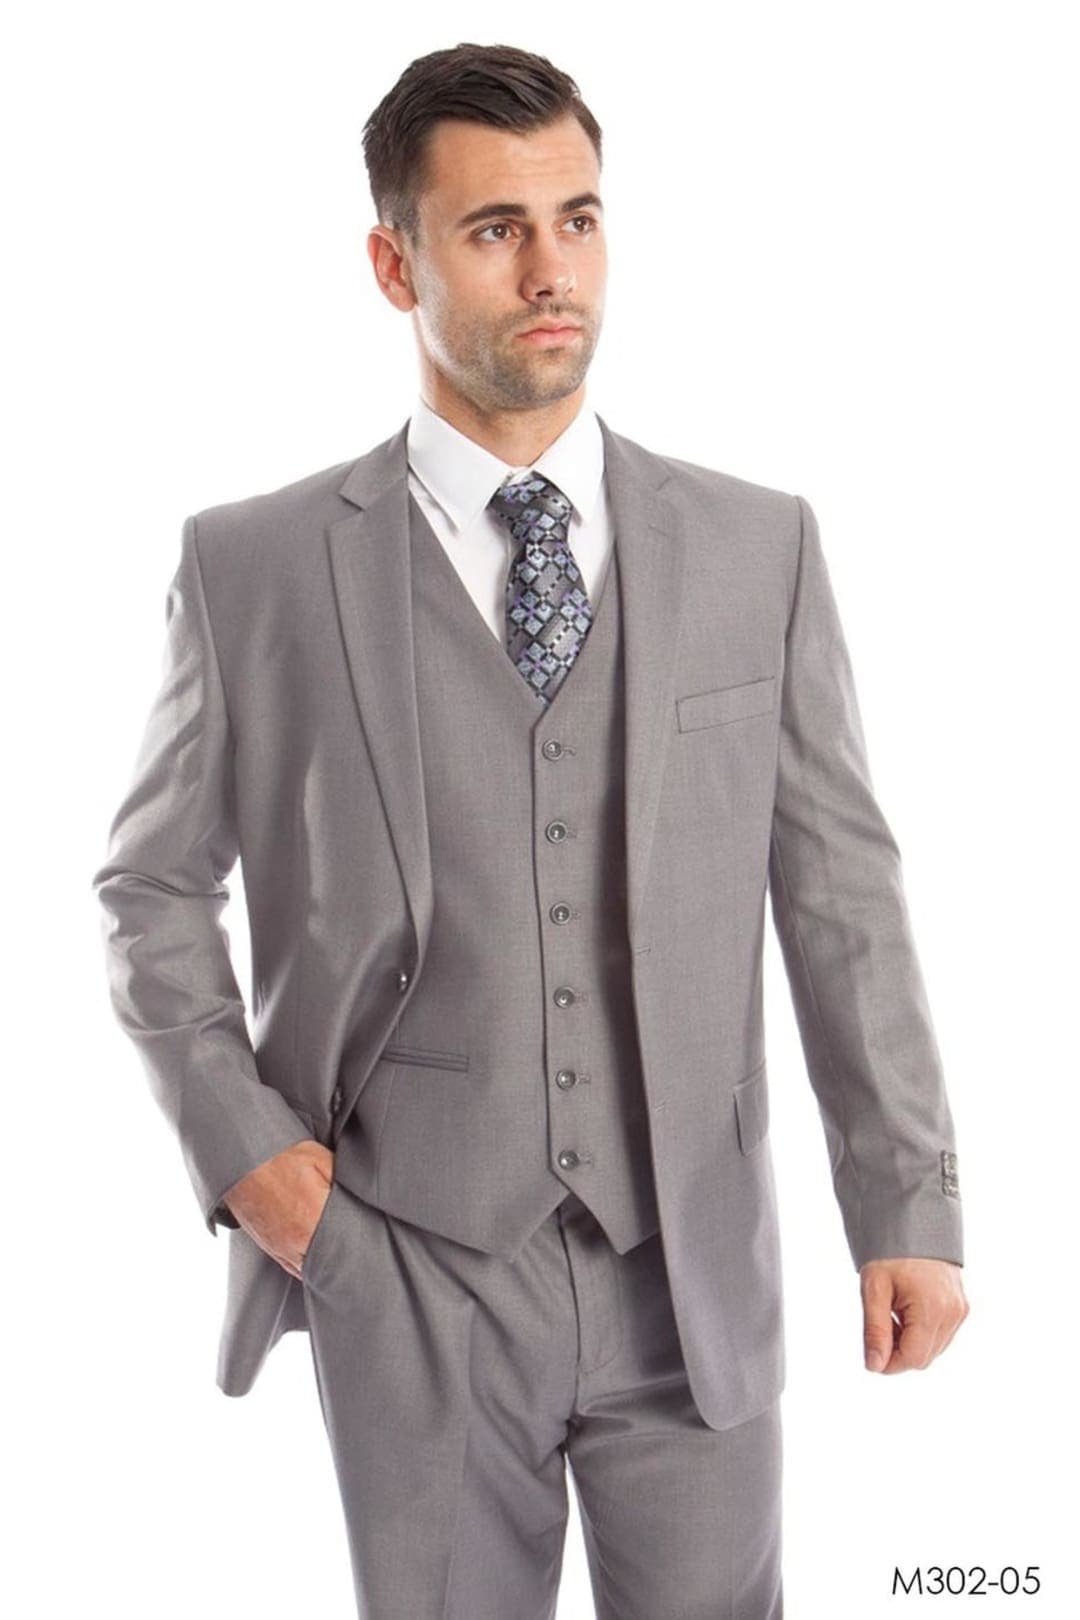 Modern Fit Solid Suit - LIGHT GREY - 05 / US34S/W28 / EU44S/W38 - Mens Suits